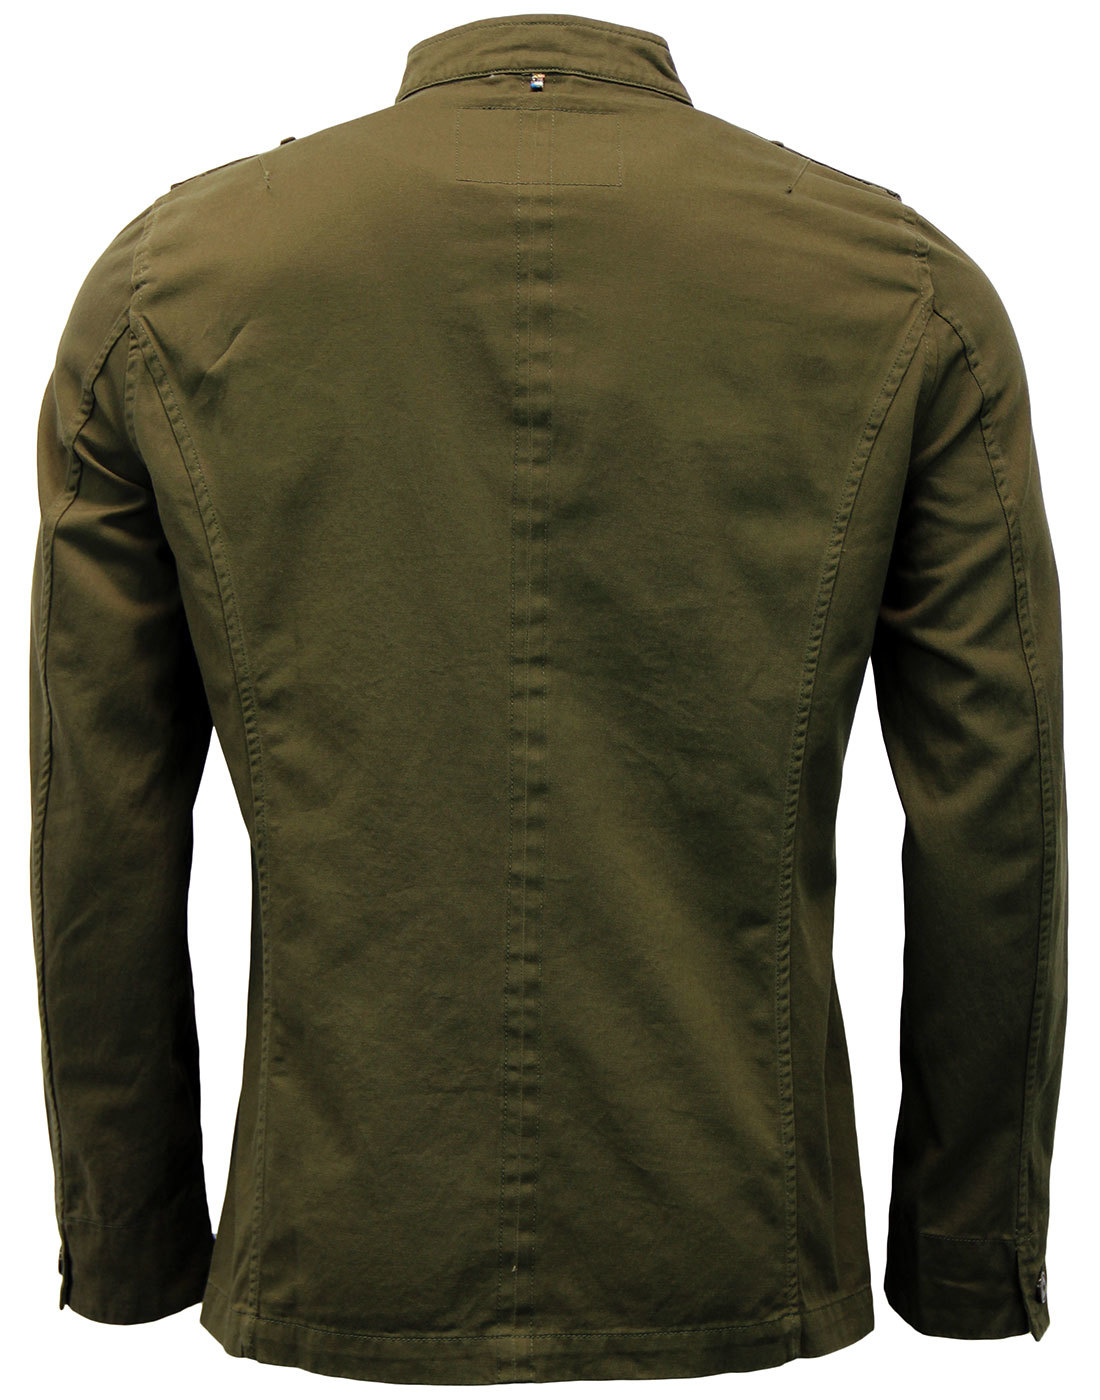 PRETTY GREEN Cotton Lennon Retro Indie Mod Military Jacket Khaki